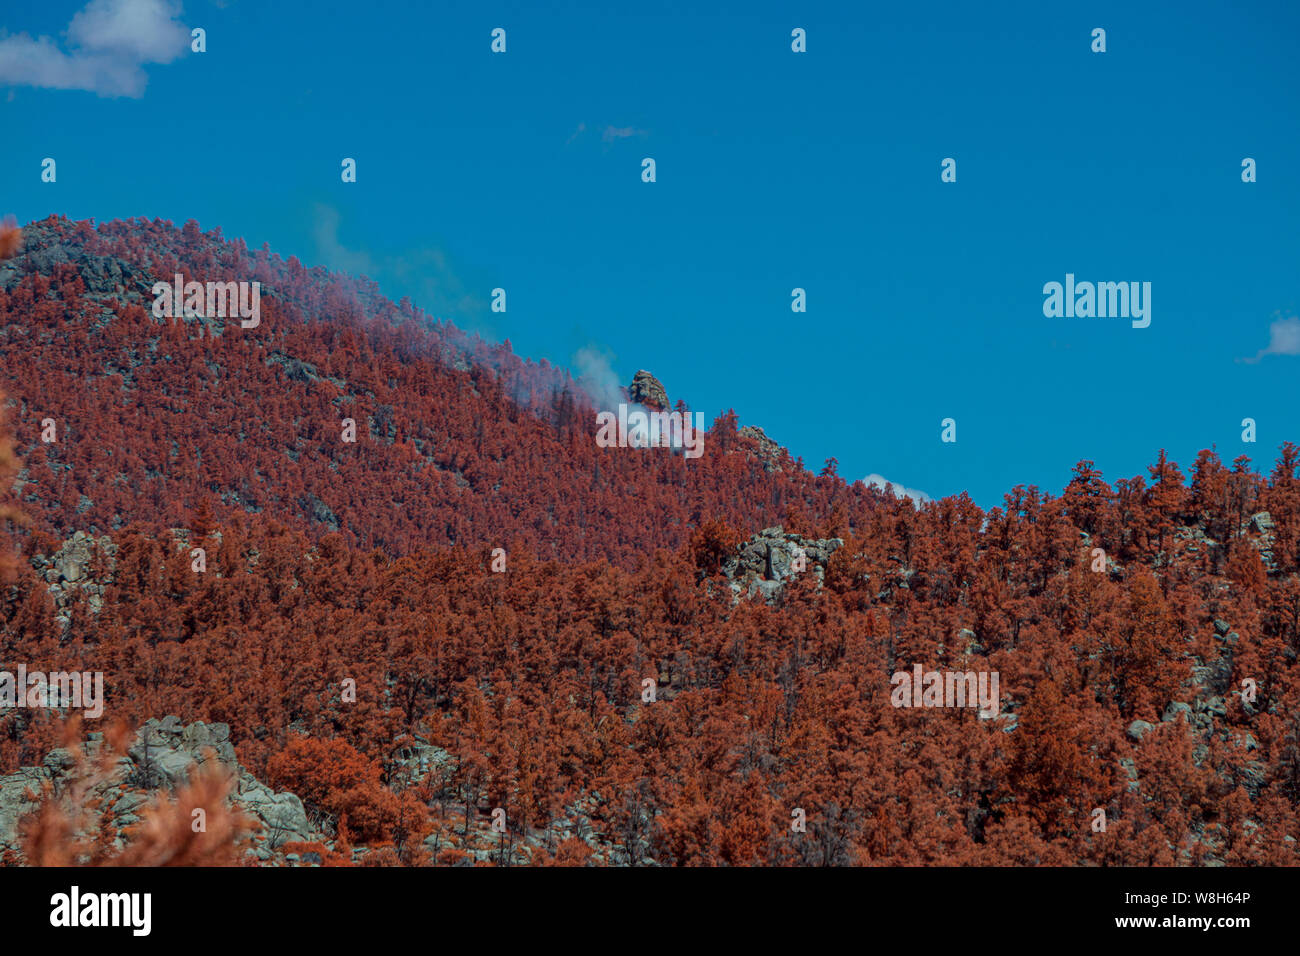 Árboles de color marrón rojizo que cubre el pico de la montaña con el humo blanco se alza. Blue Sky. Foto de stock